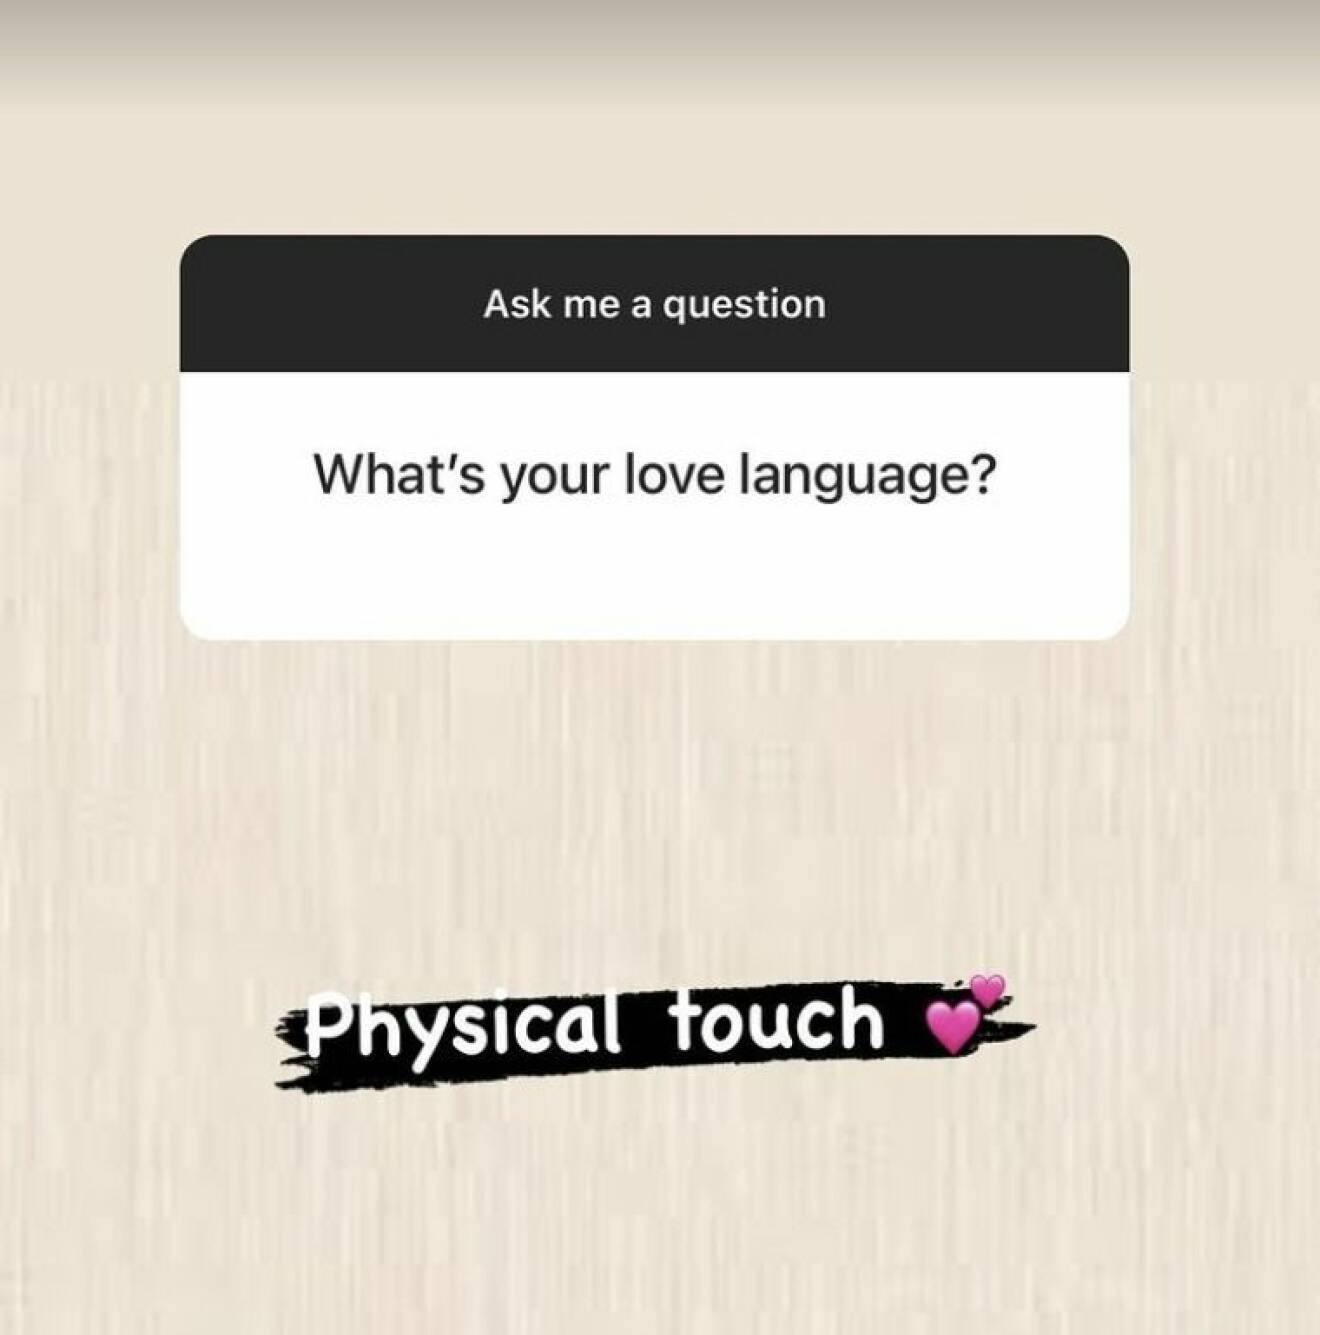 Elena Belle svarar på vilket hennes kärleksspråk är i en frågestund på Instagram.